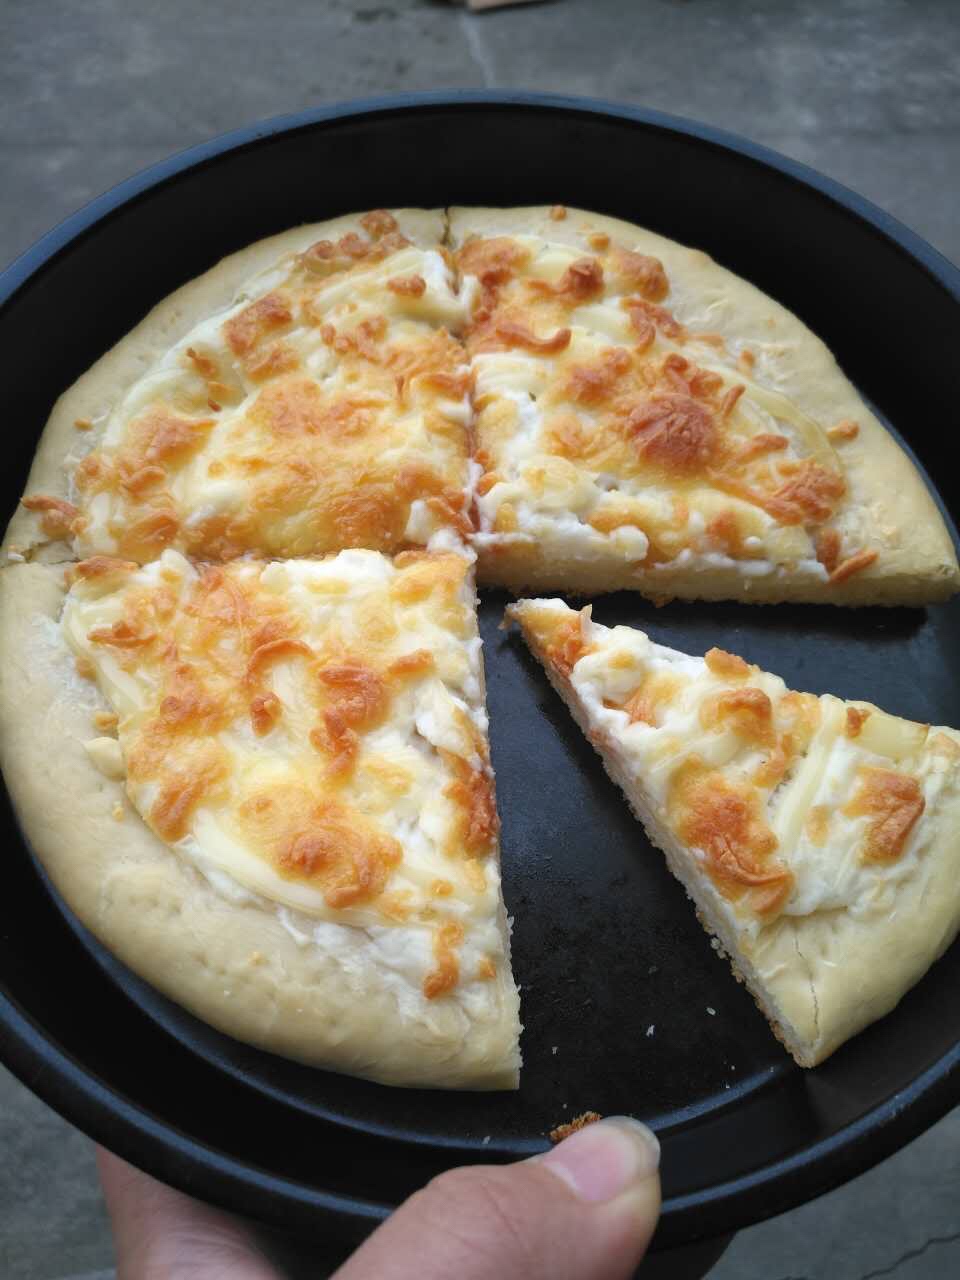 奶酪披萨